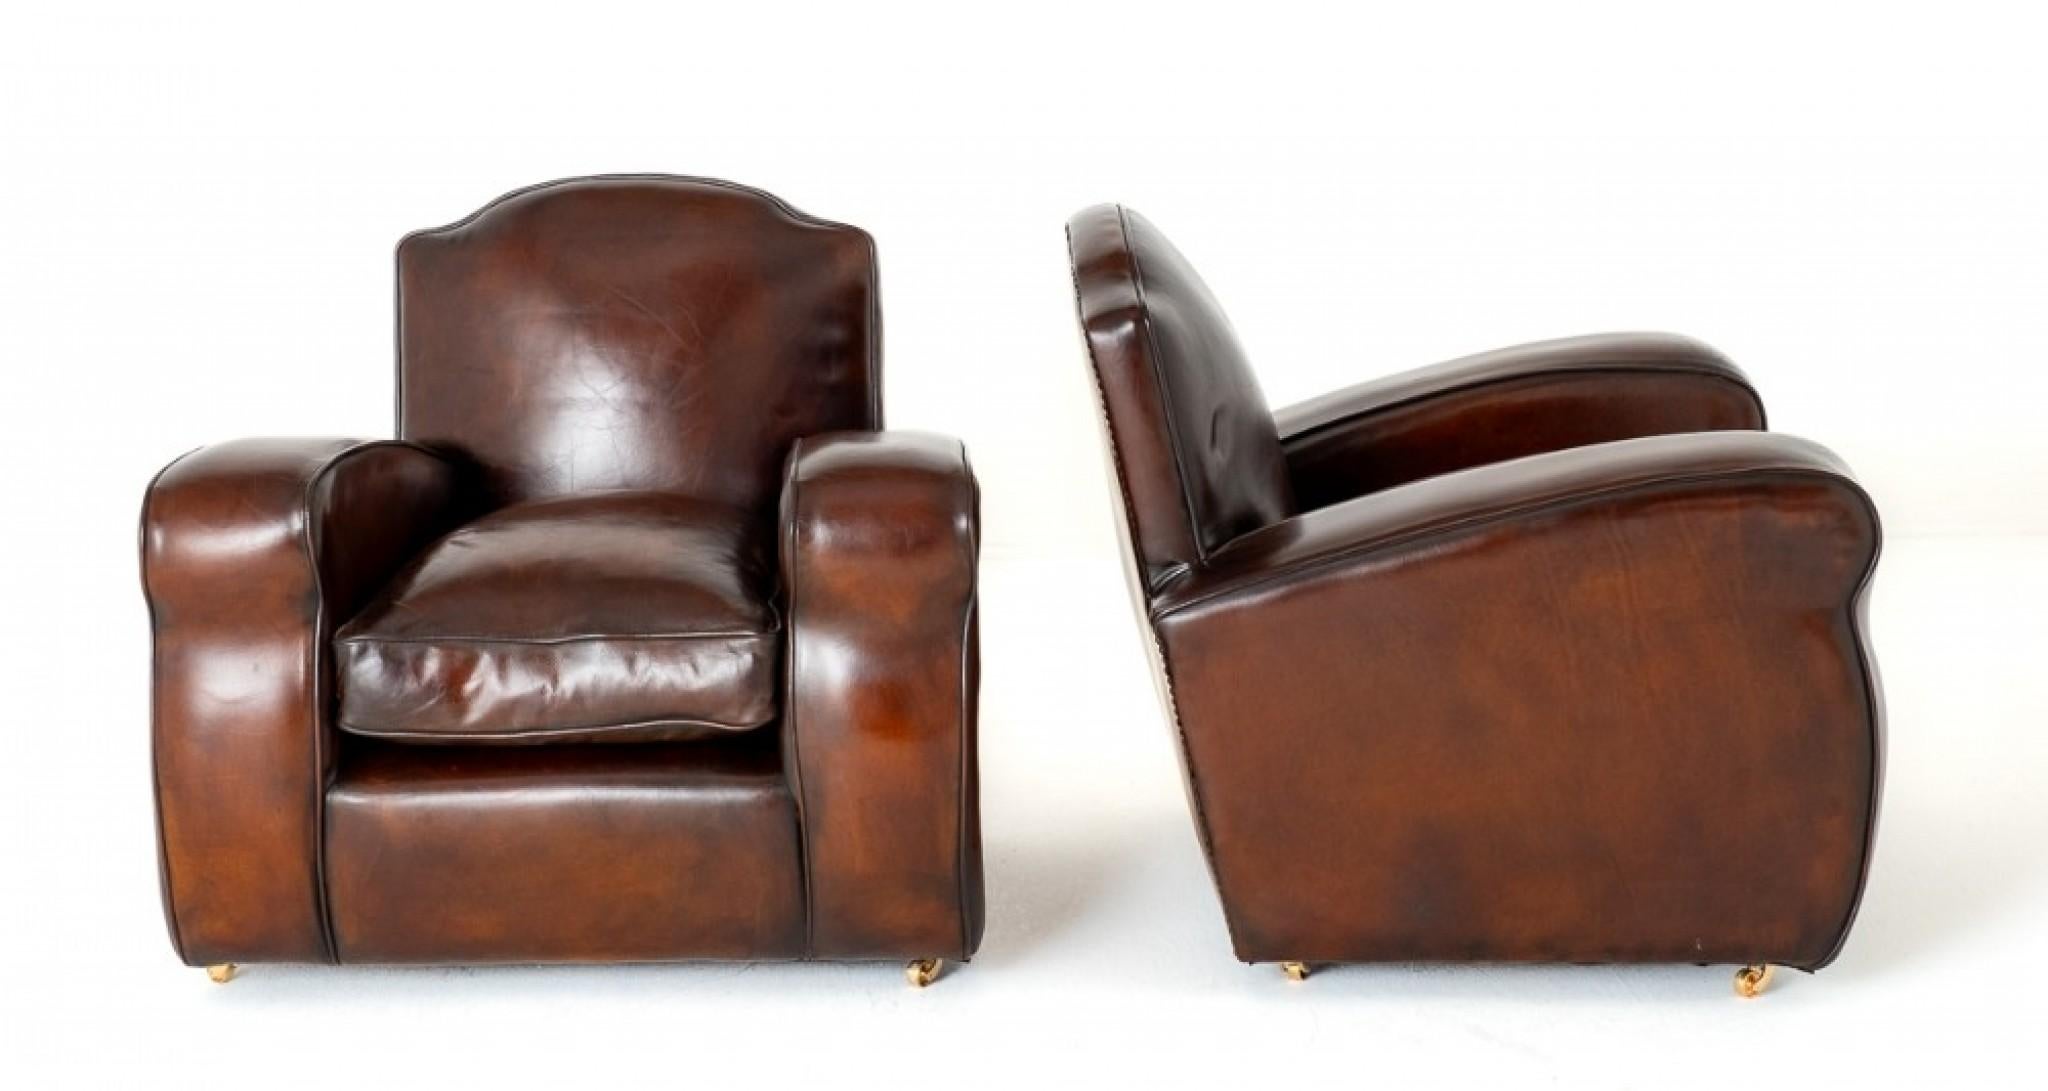 Paire de fauteuils club en cuir Art Déco.
Ces fauteuils club sont dotés de larges accoudoirs et d'un dossier élégant de forme Art déco.
Les chaises sont dotées d'un coussin en cuir qui les rend très confortables.
Les chaises sont d'une belle couleur